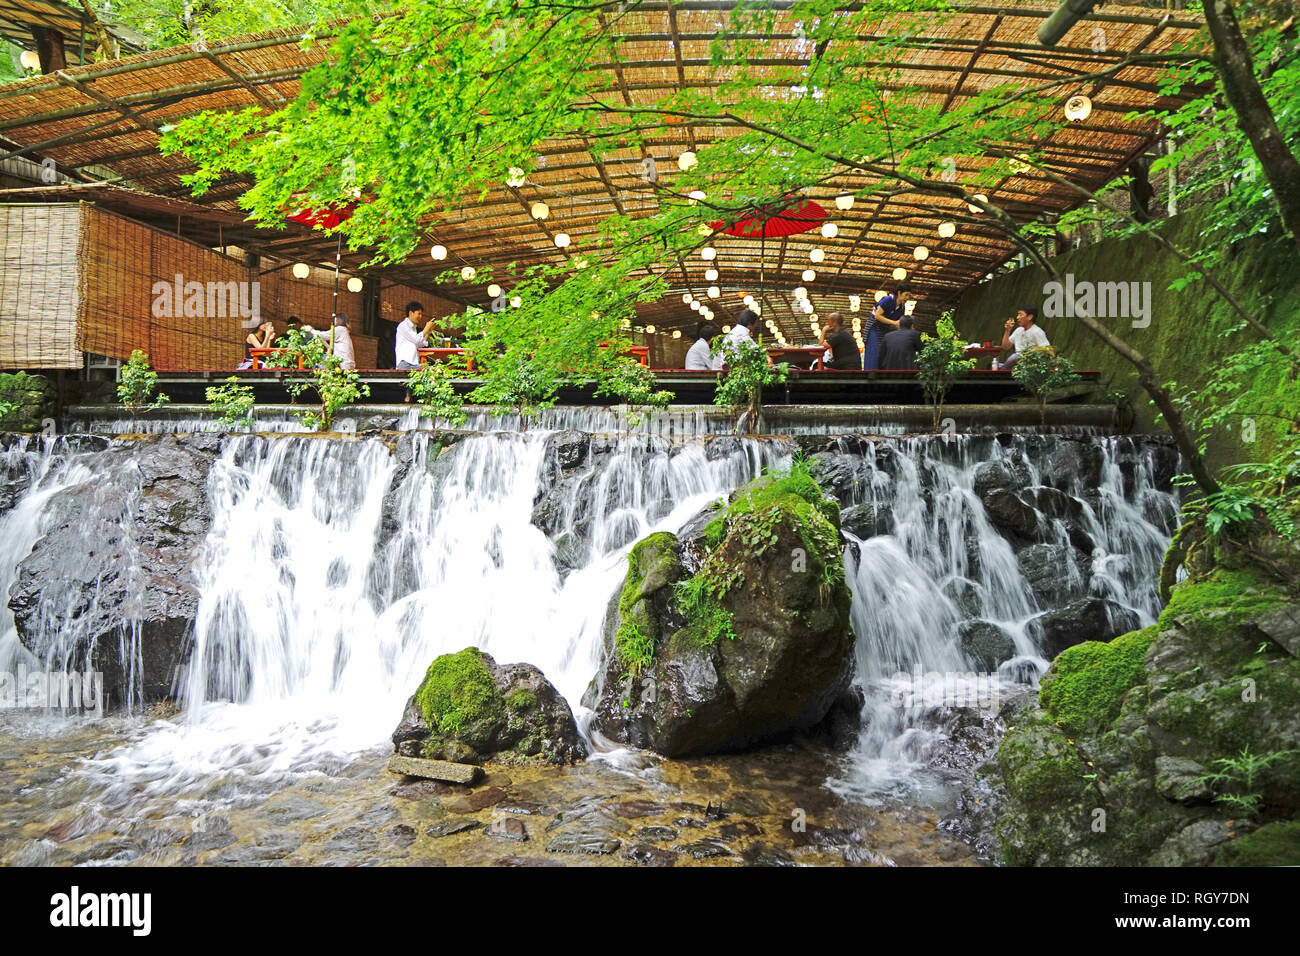 Die Japan traditionelle Restaurant im Freien, Zen-Garten, Wasserfall, grüne Pflanzen und Bäume Stockfoto